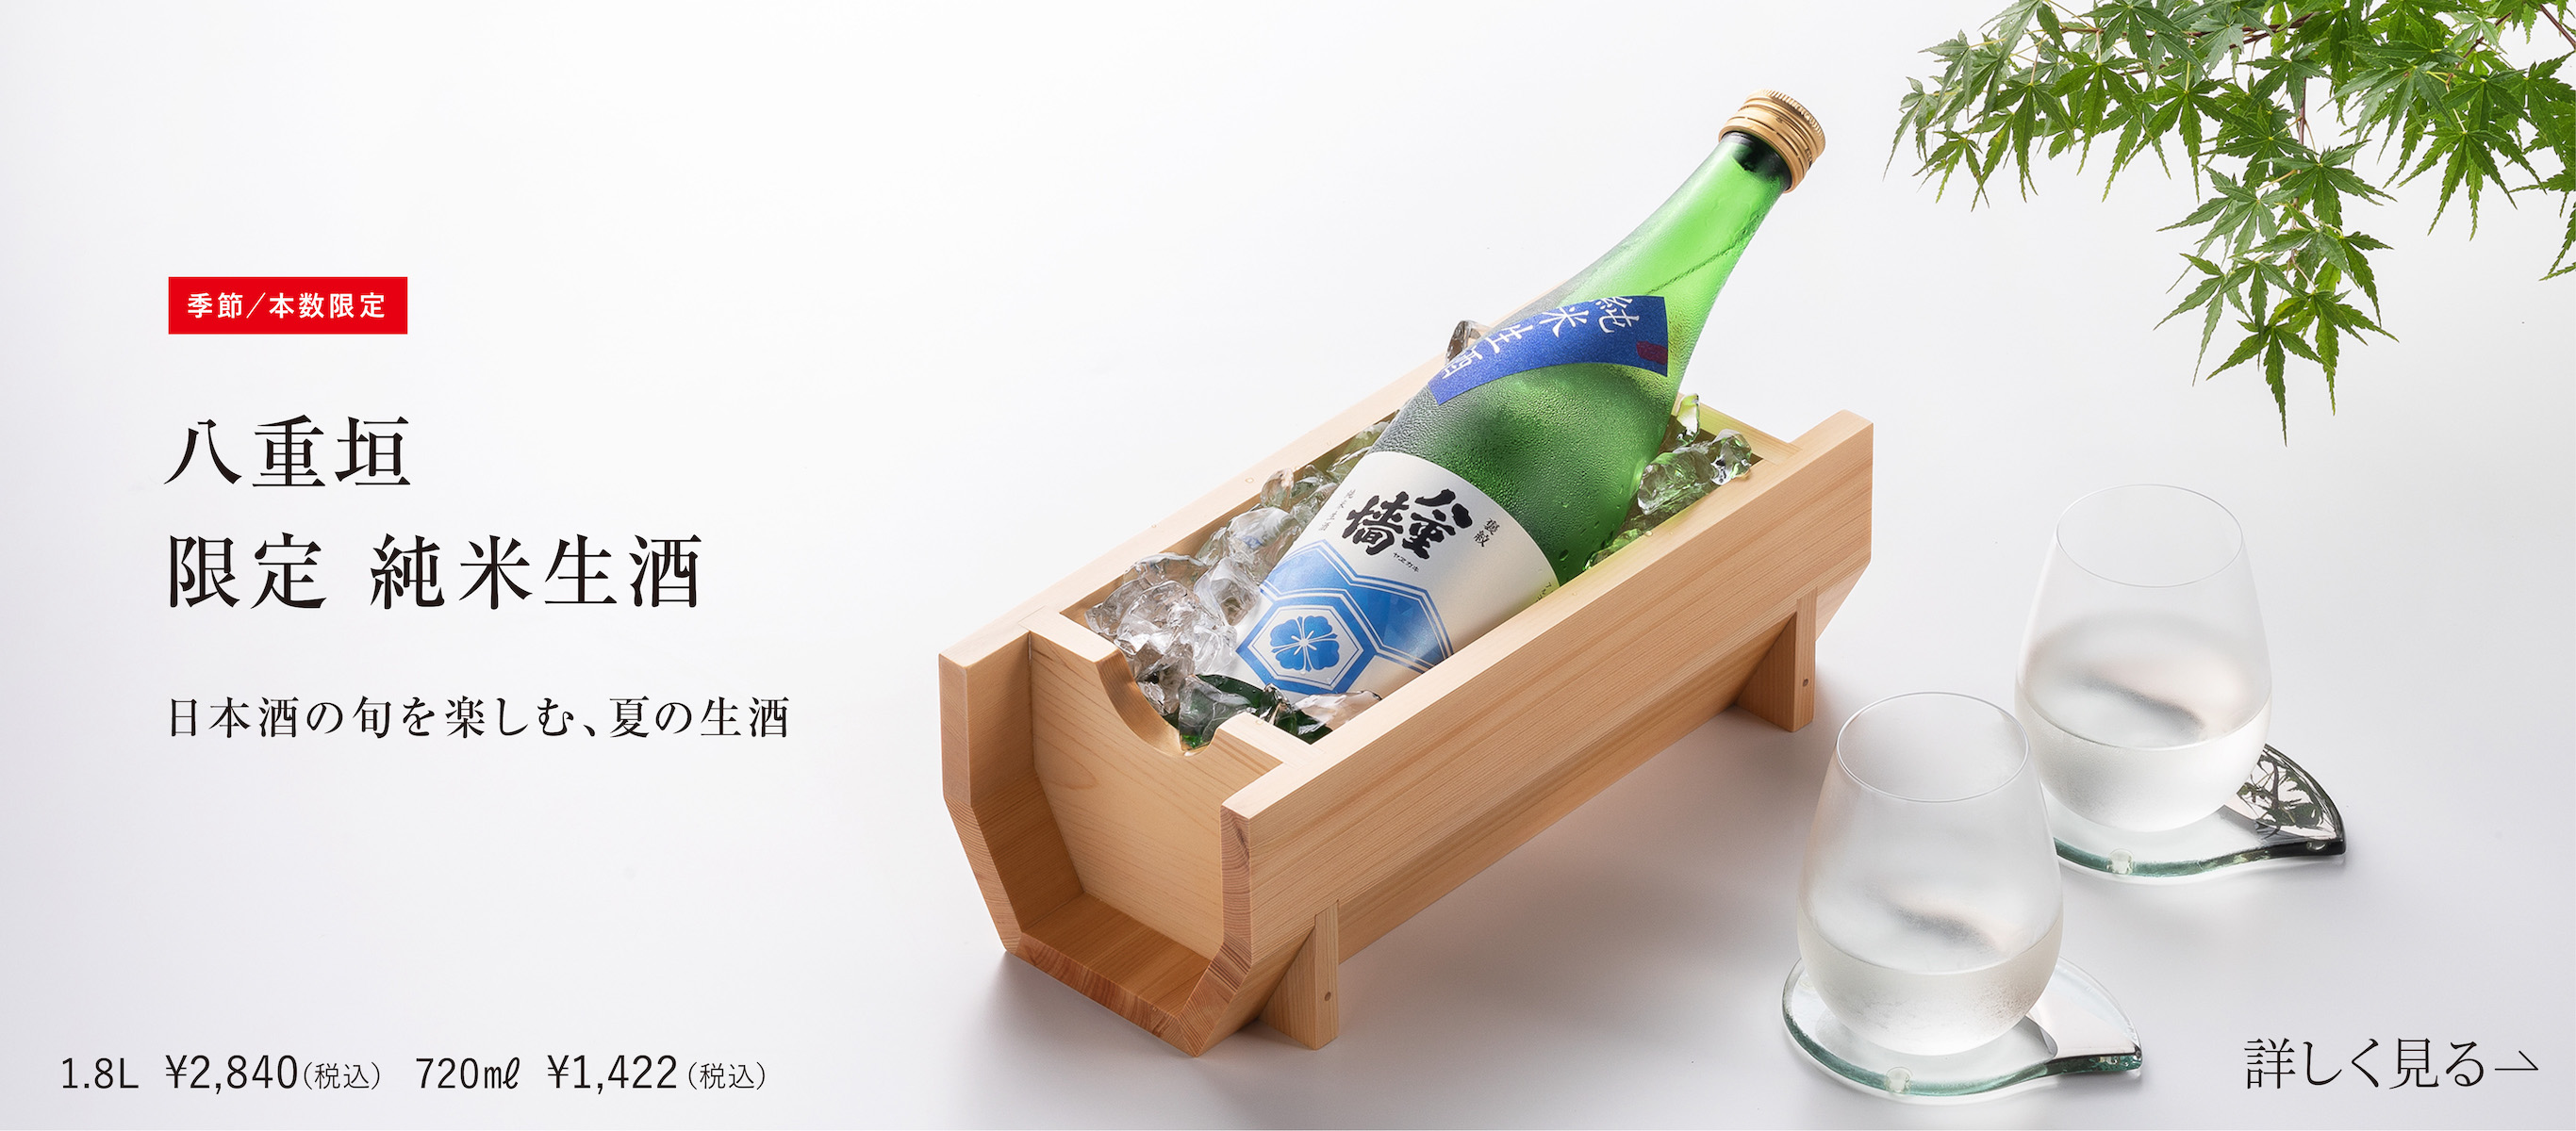 季節 本数限定 八重垣 限定 純米生酒 日本の旬を楽しむ、夏の生酒